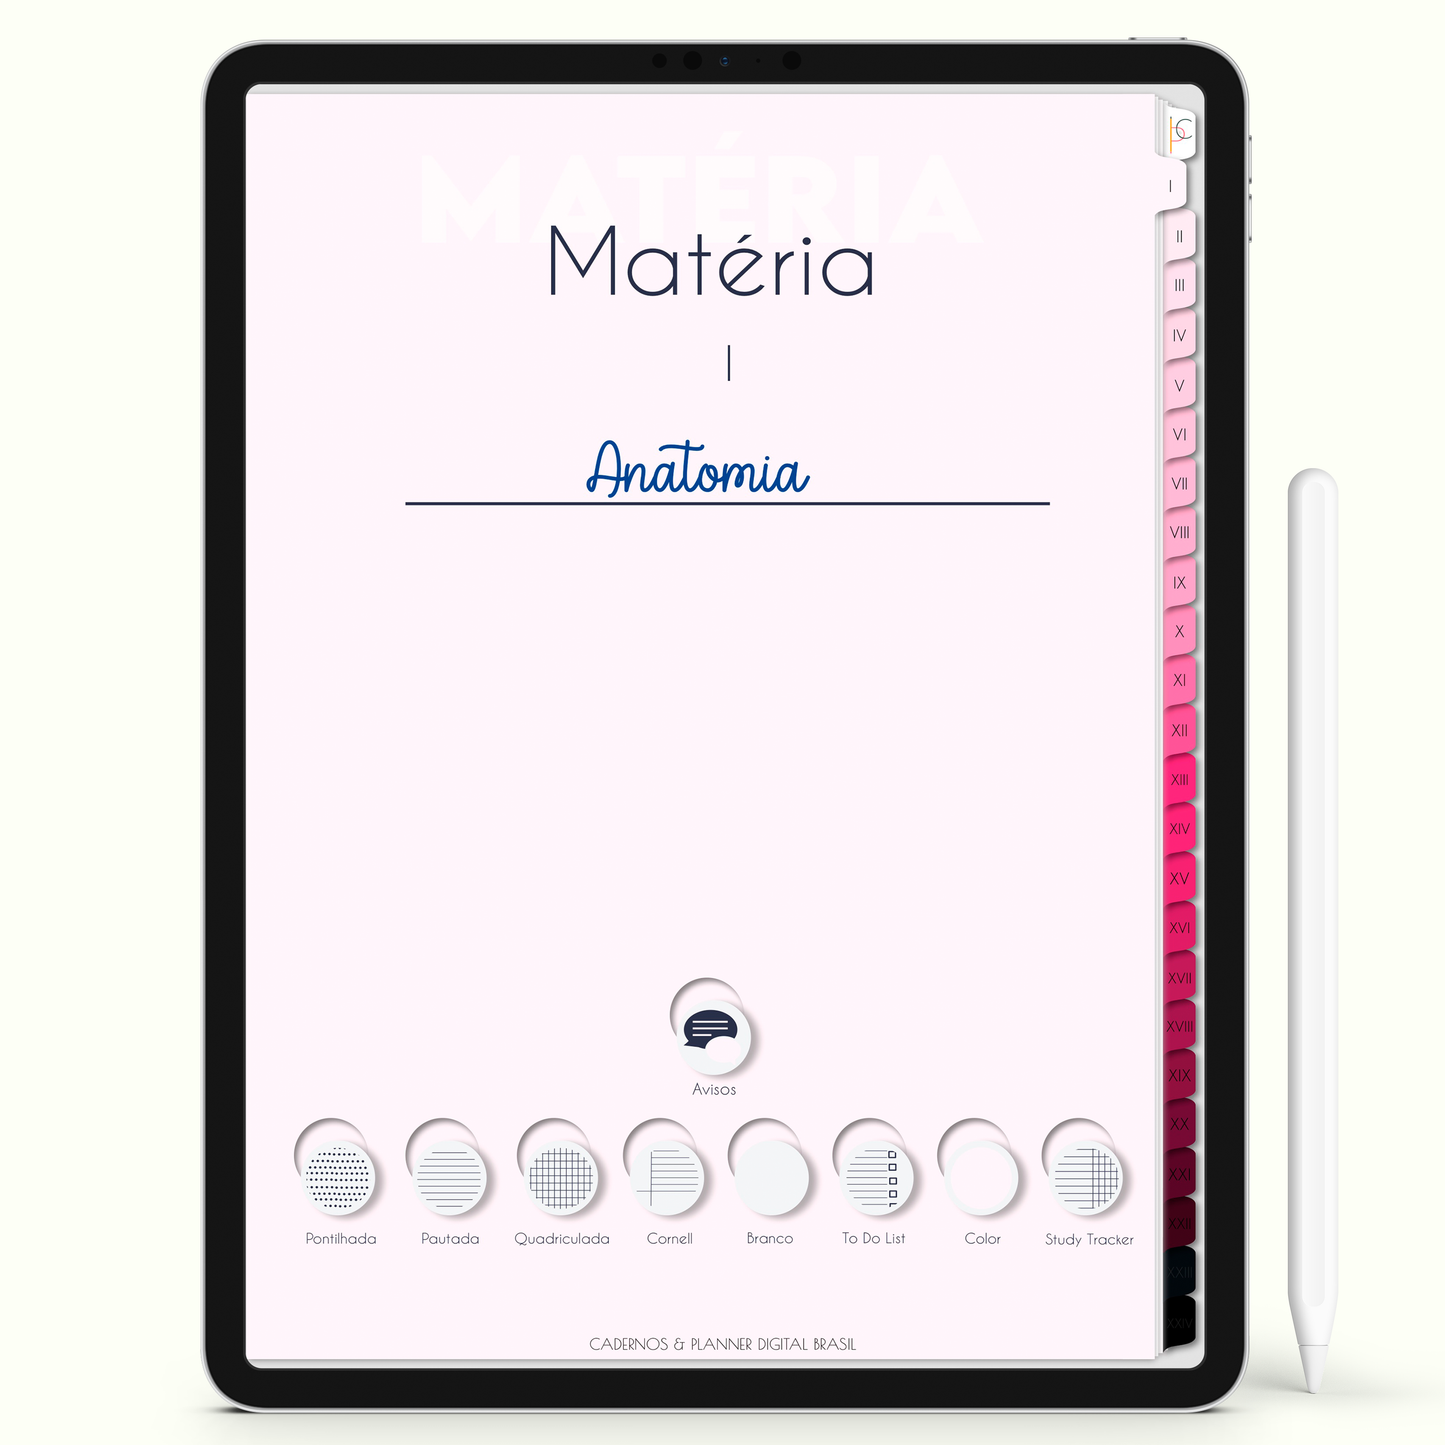 Caderno Digital Blush 24 Matérias - Capa da Matéria I do Caderno para iPad e Tablet Android. Cadernos & Planner Digital Brasil